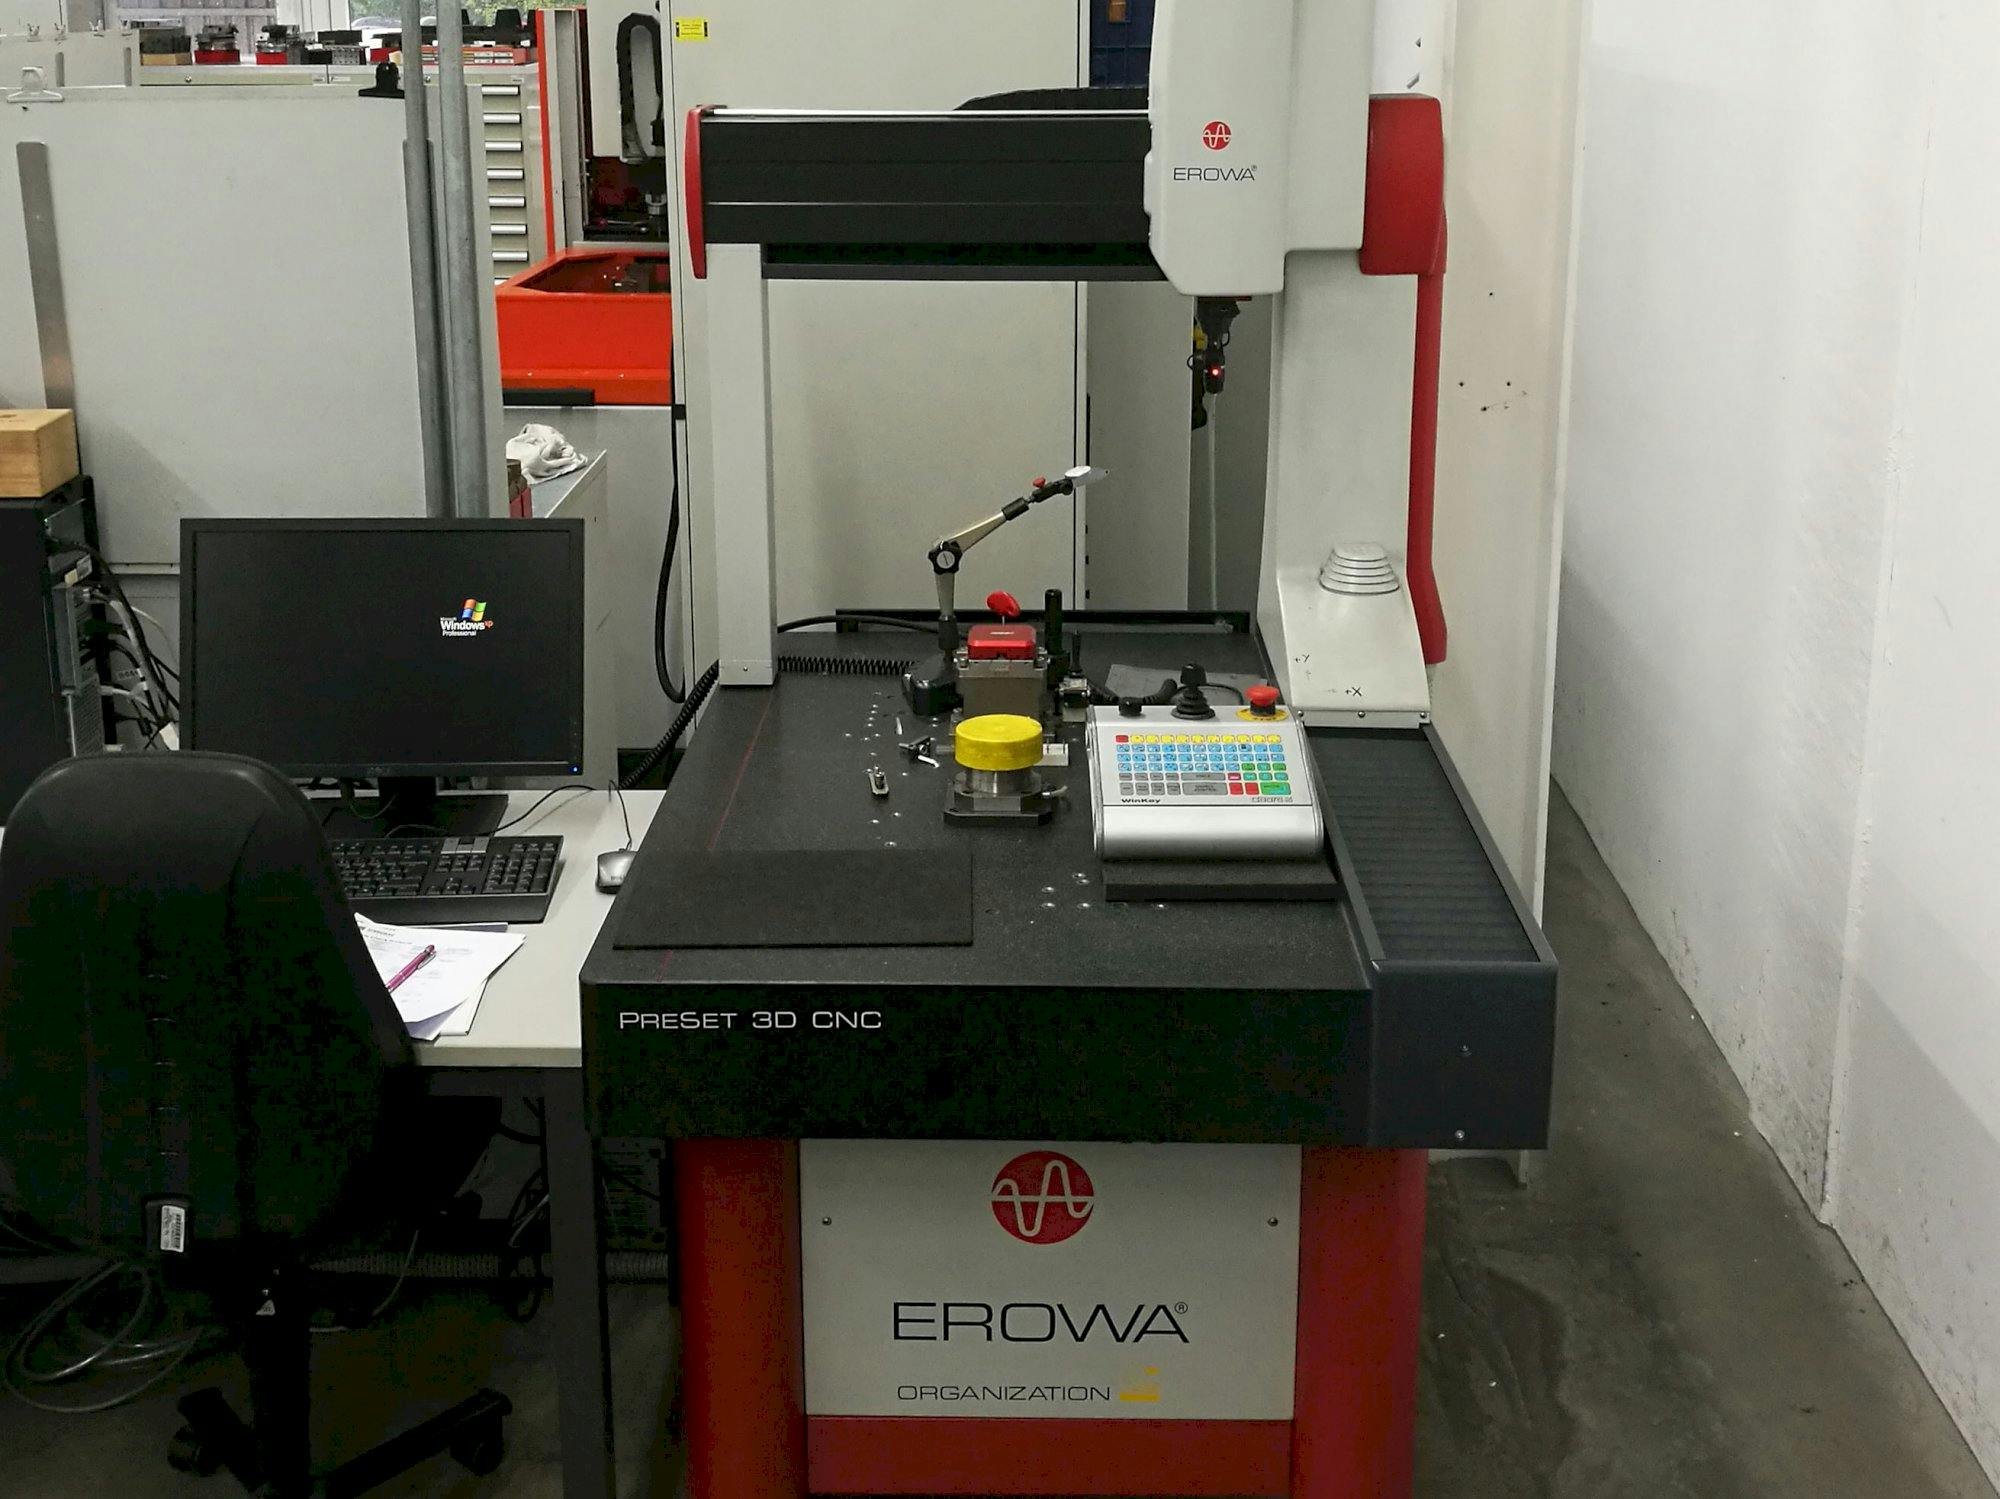 Frontansicht der EROWA PreSet 3D CNC Maschine